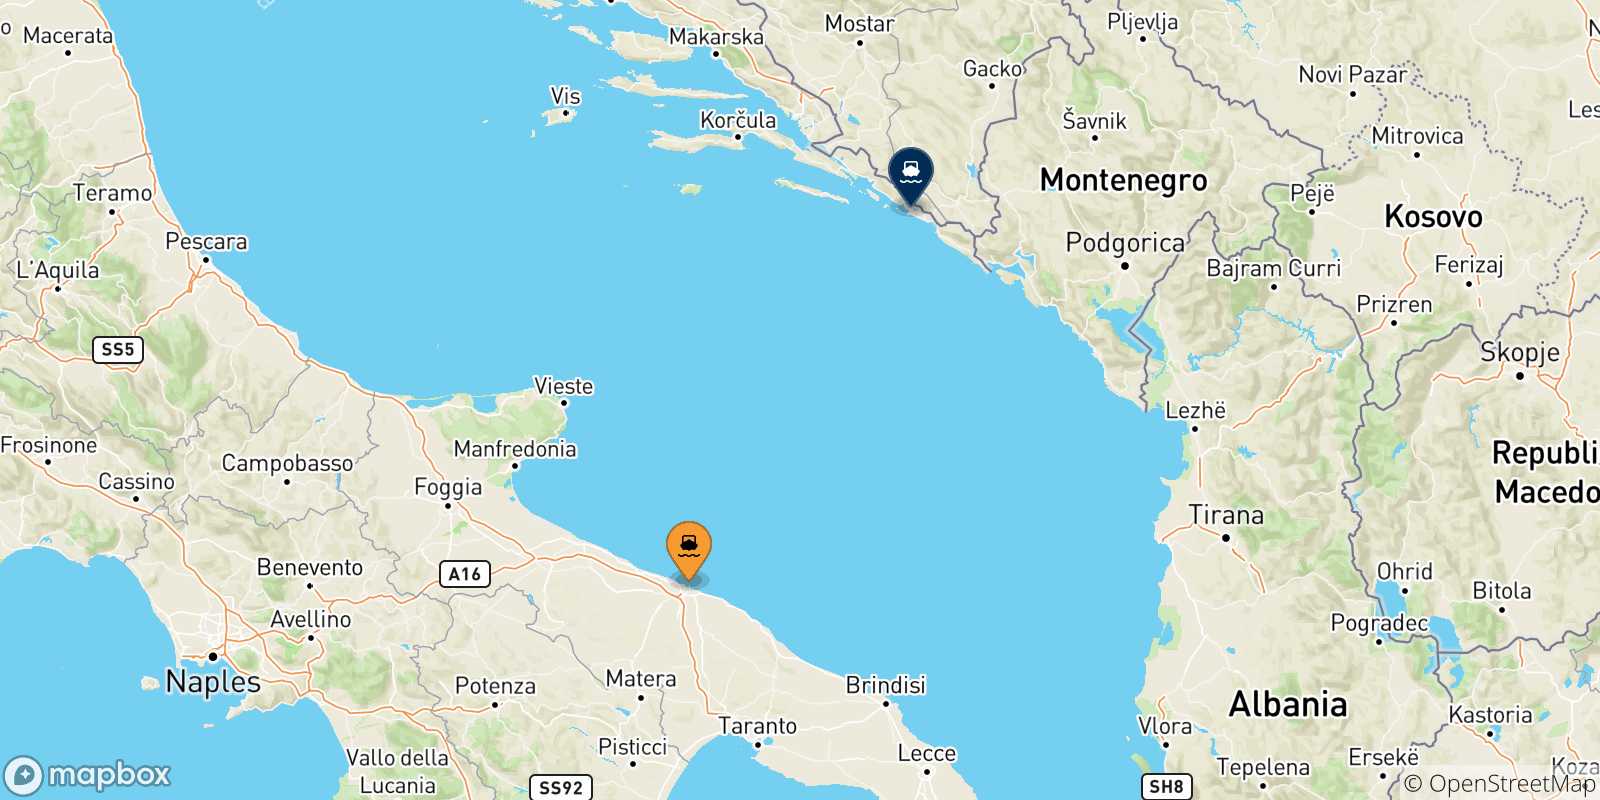 Mappa delle possibili rotte tra l'Italia e Dubrovnik